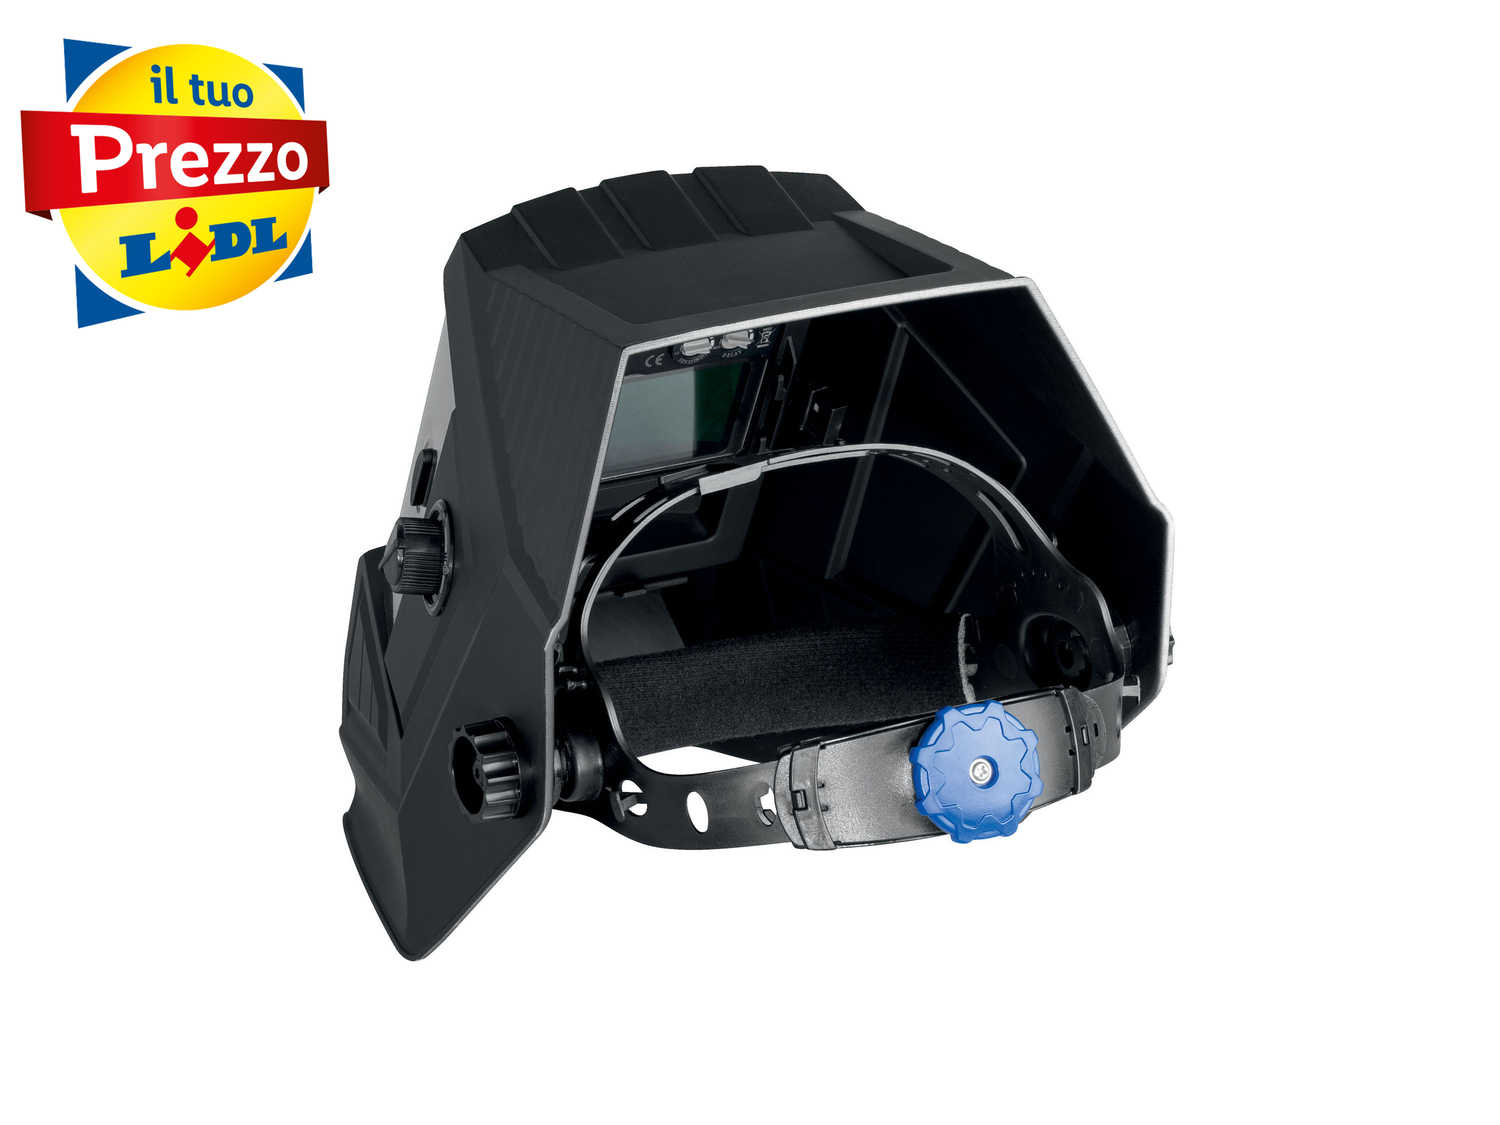 Maschera automatica da saldatore con LED Parkside, prezzo 34.99 € 
- Con LED ...